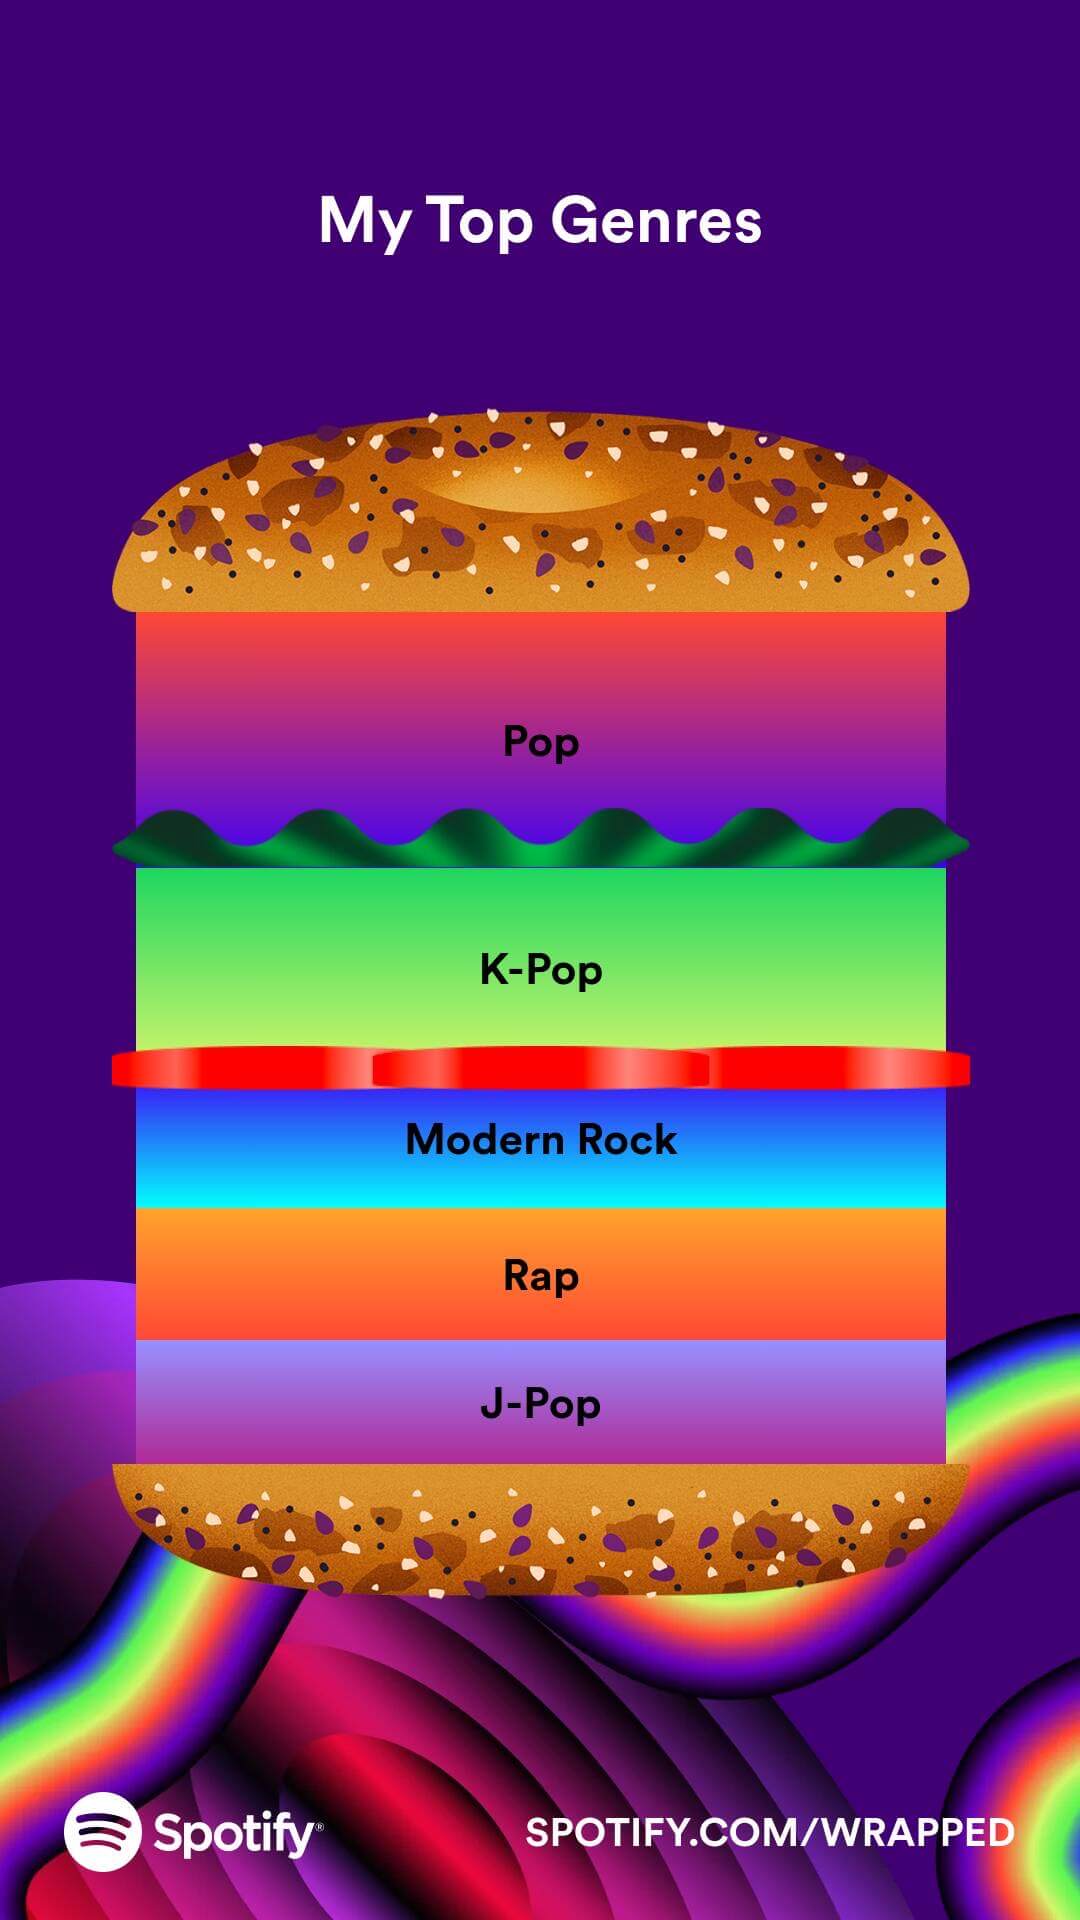 Top genres: pop, k-pop, modern rock, rap, and j-pop.